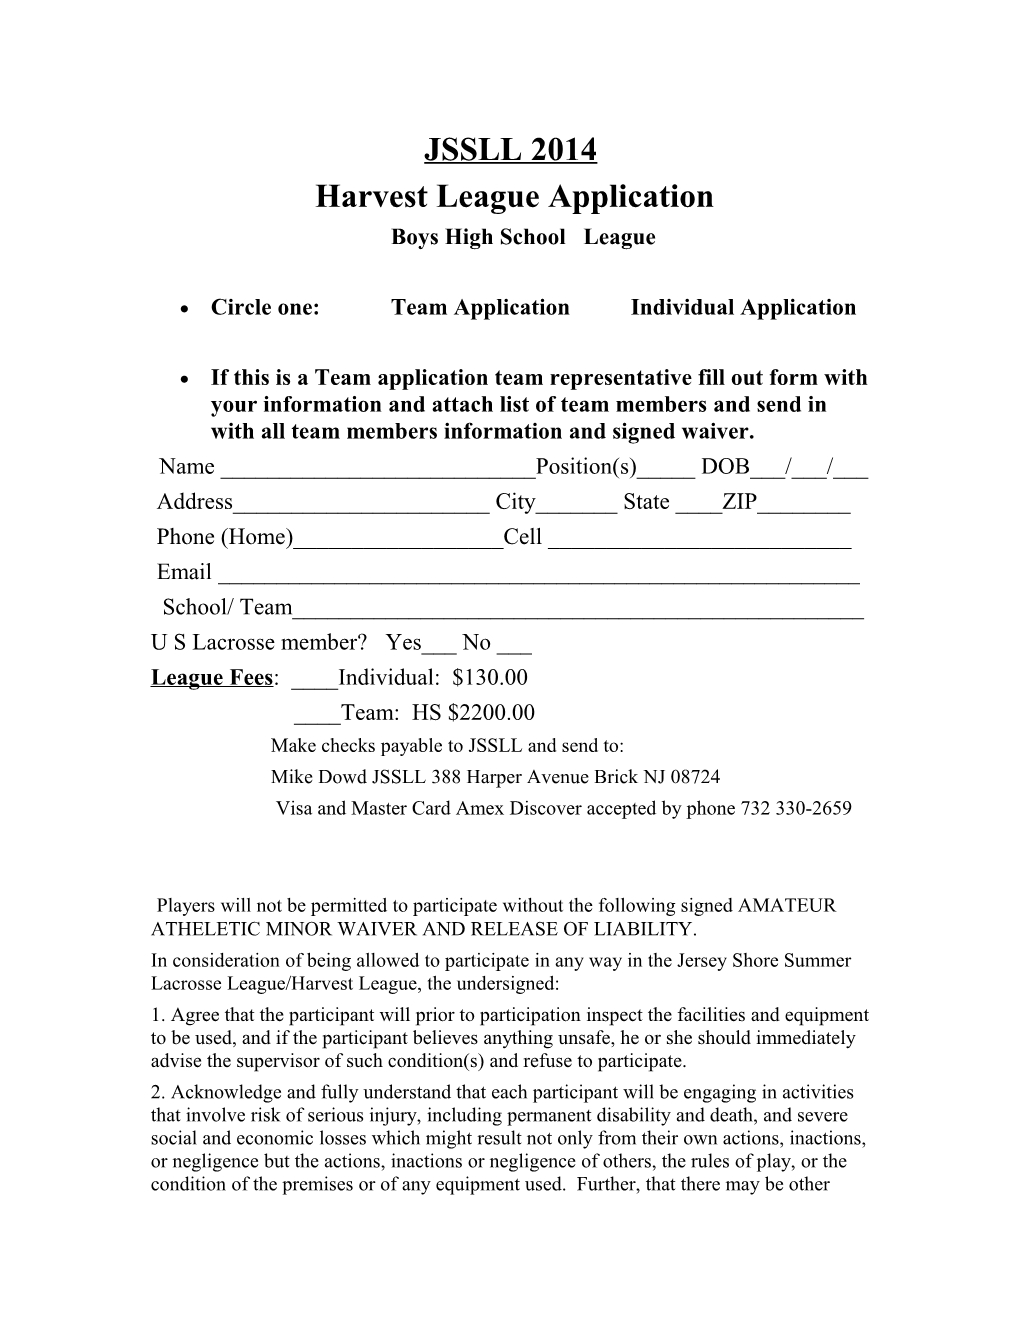 Harvest League Application